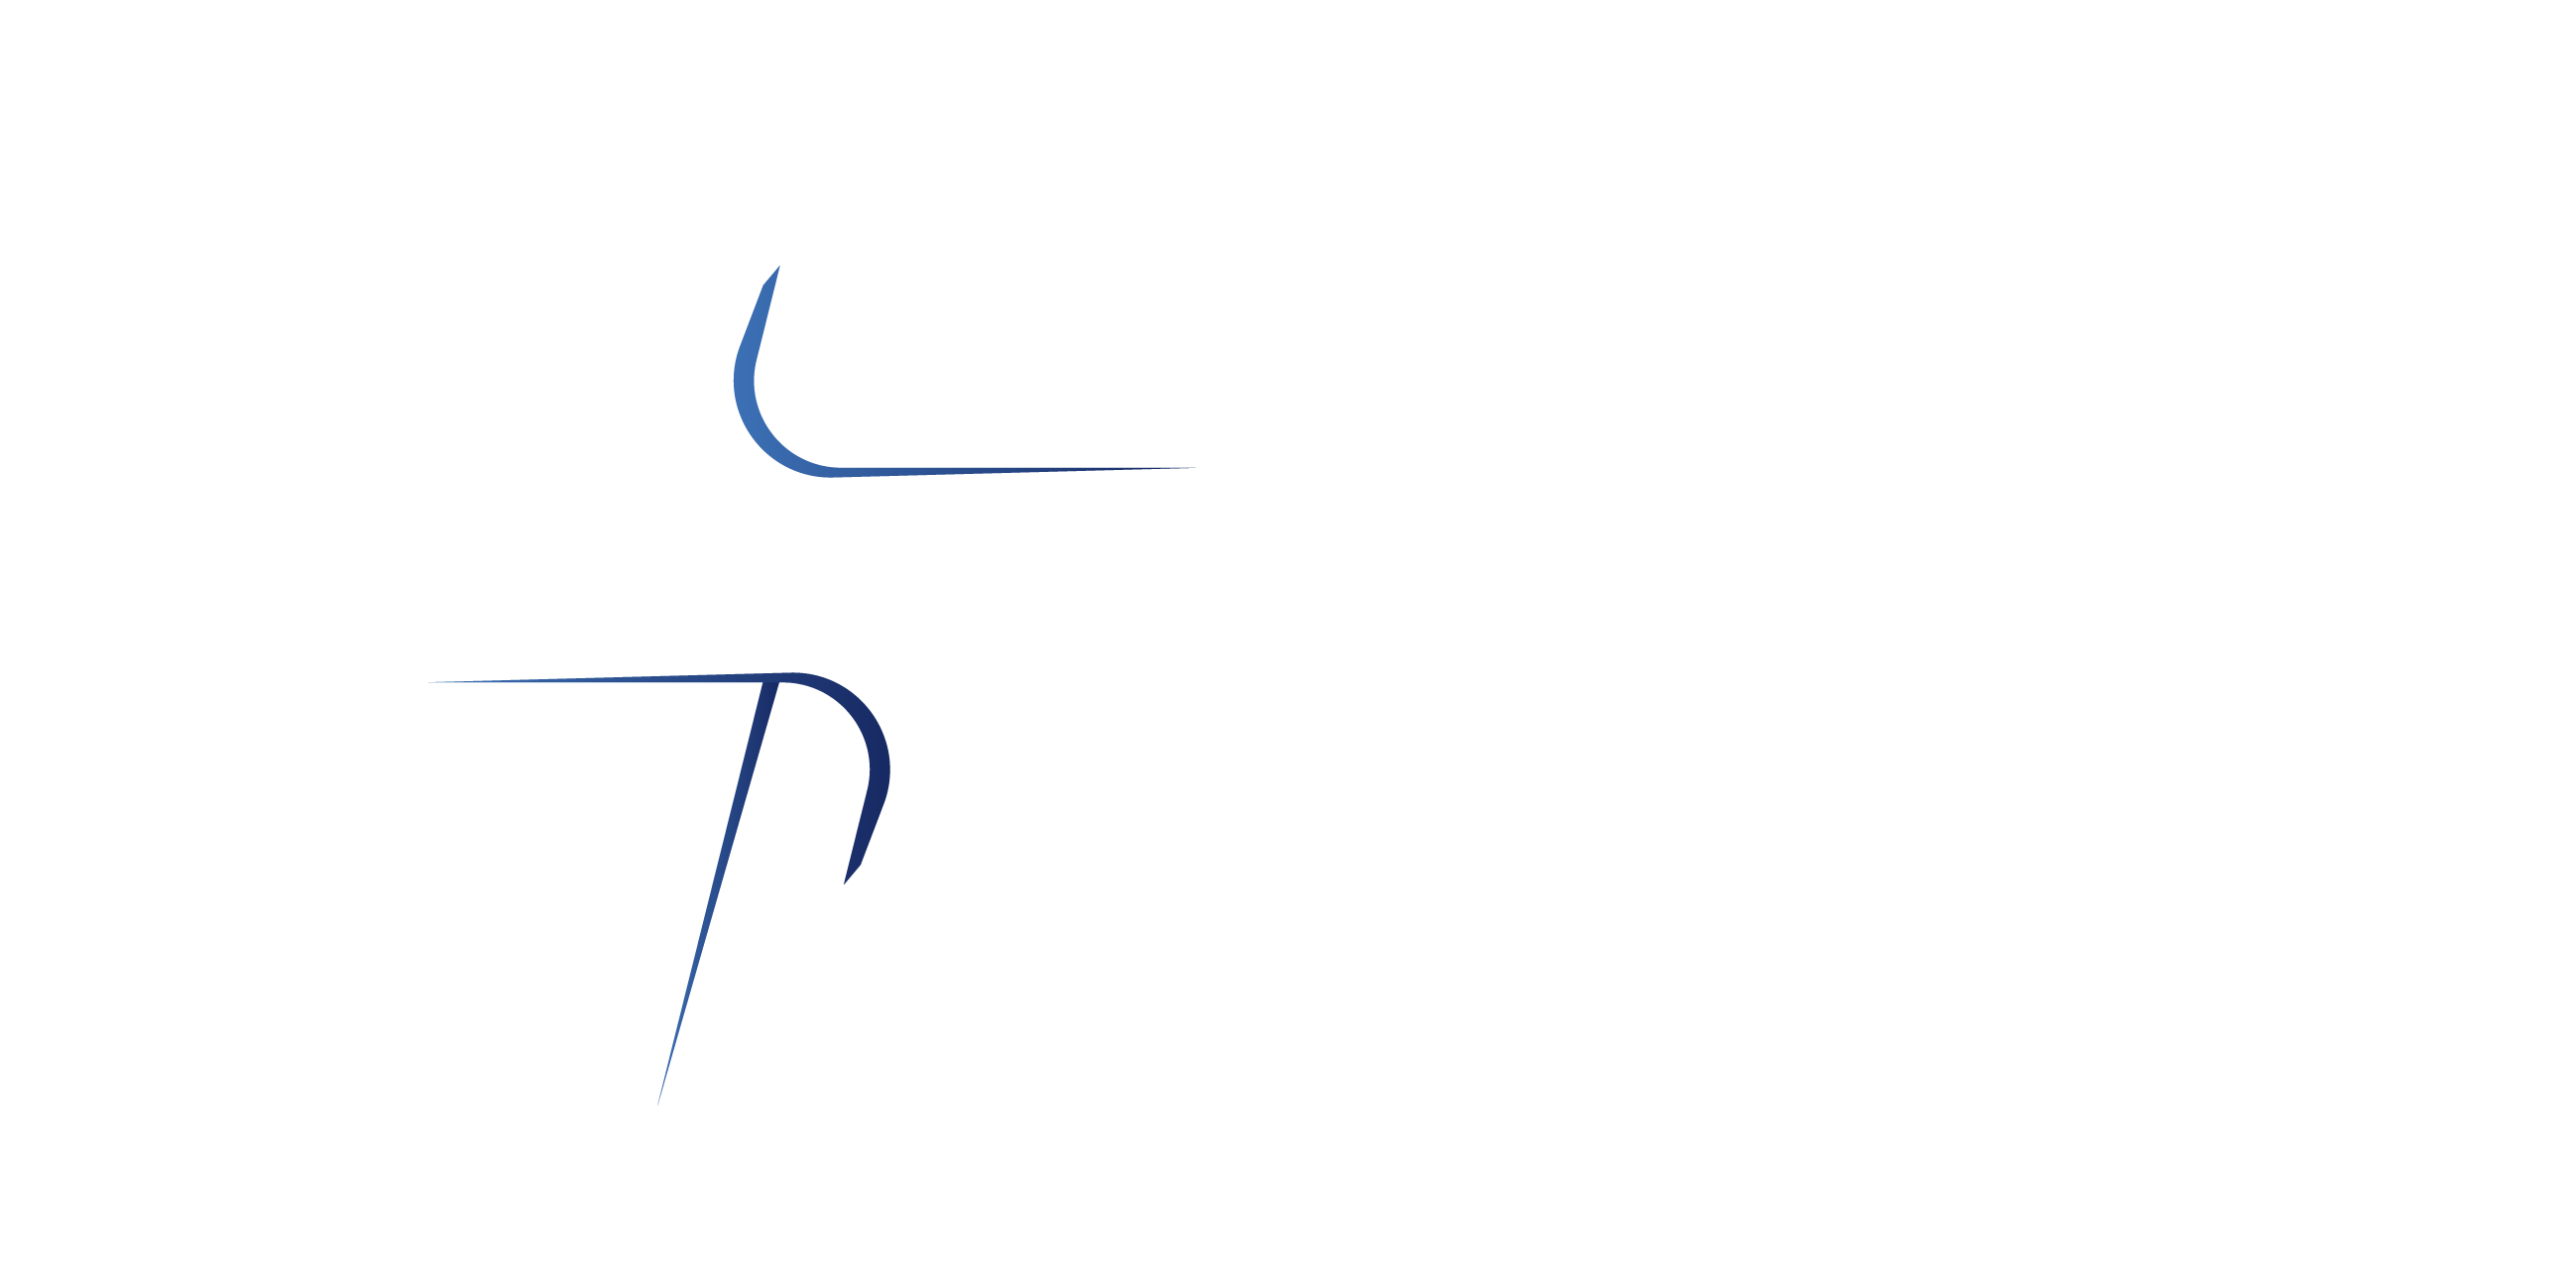 VK energy